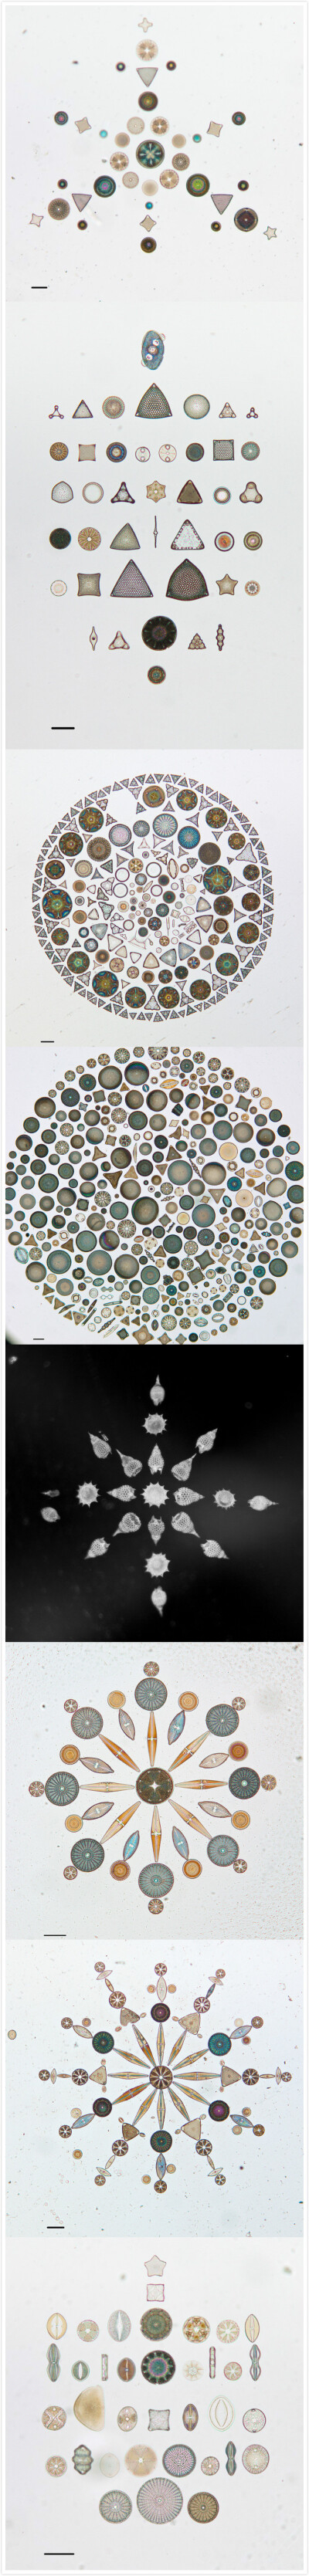 微观硅藻的艺术排列，通过显微镜拍摄 | 美国加州科学院 California Academy of Sciences 官方flickr&amp;gt;http://t.cn/8FaHwzp